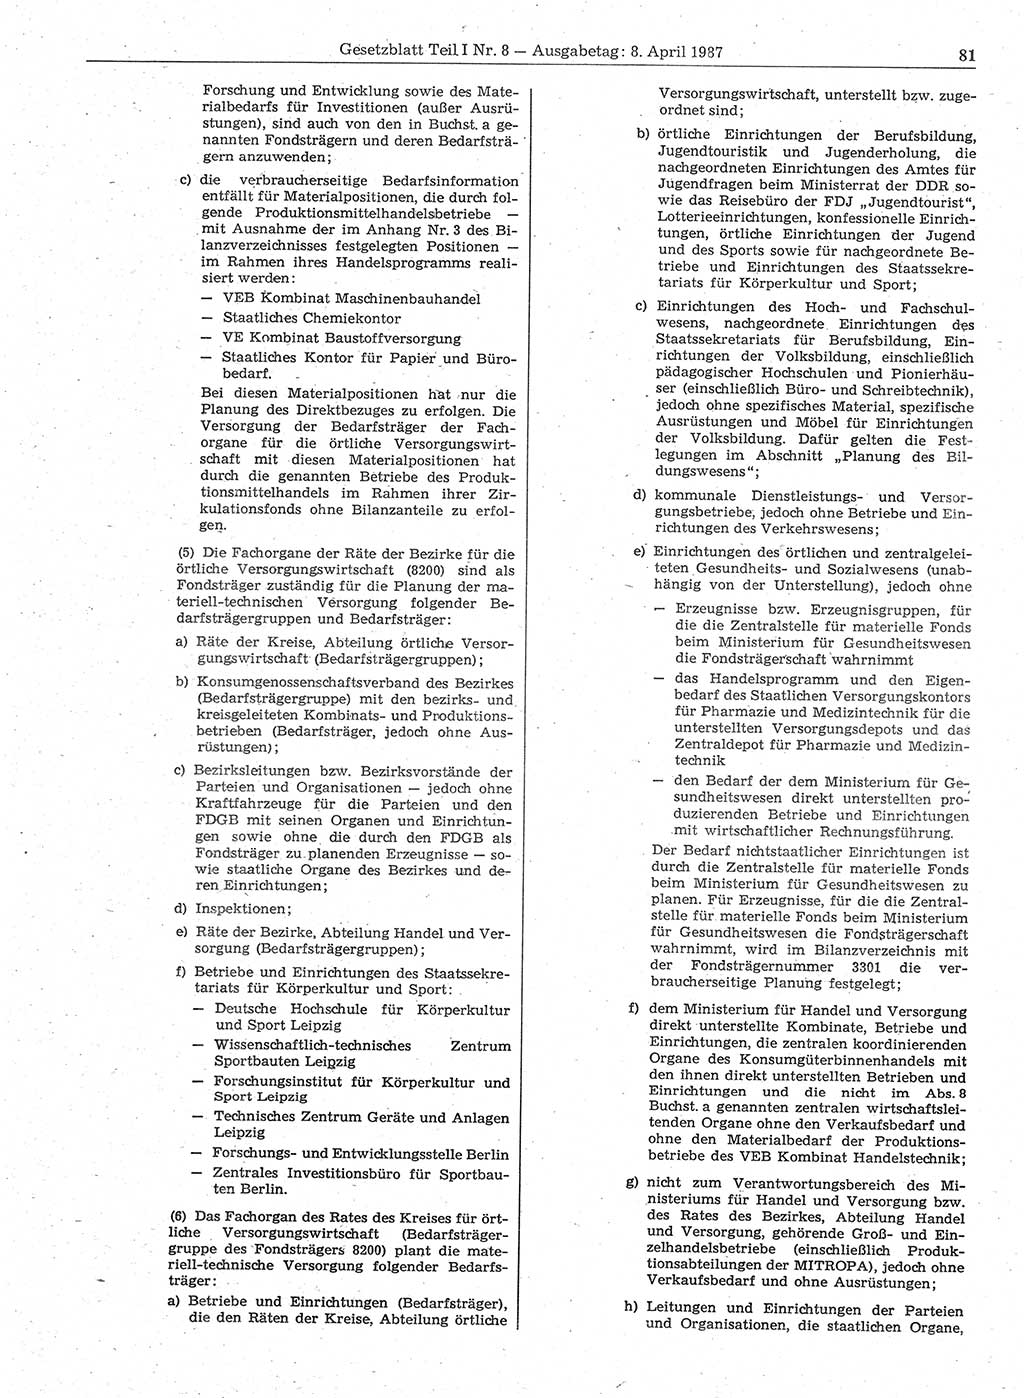 Gesetzblatt (GBl.) der Deutschen Demokratischen Republik (DDR) Teil Ⅰ 1987, Seite 81 (GBl. DDR Ⅰ 1987, S. 81)